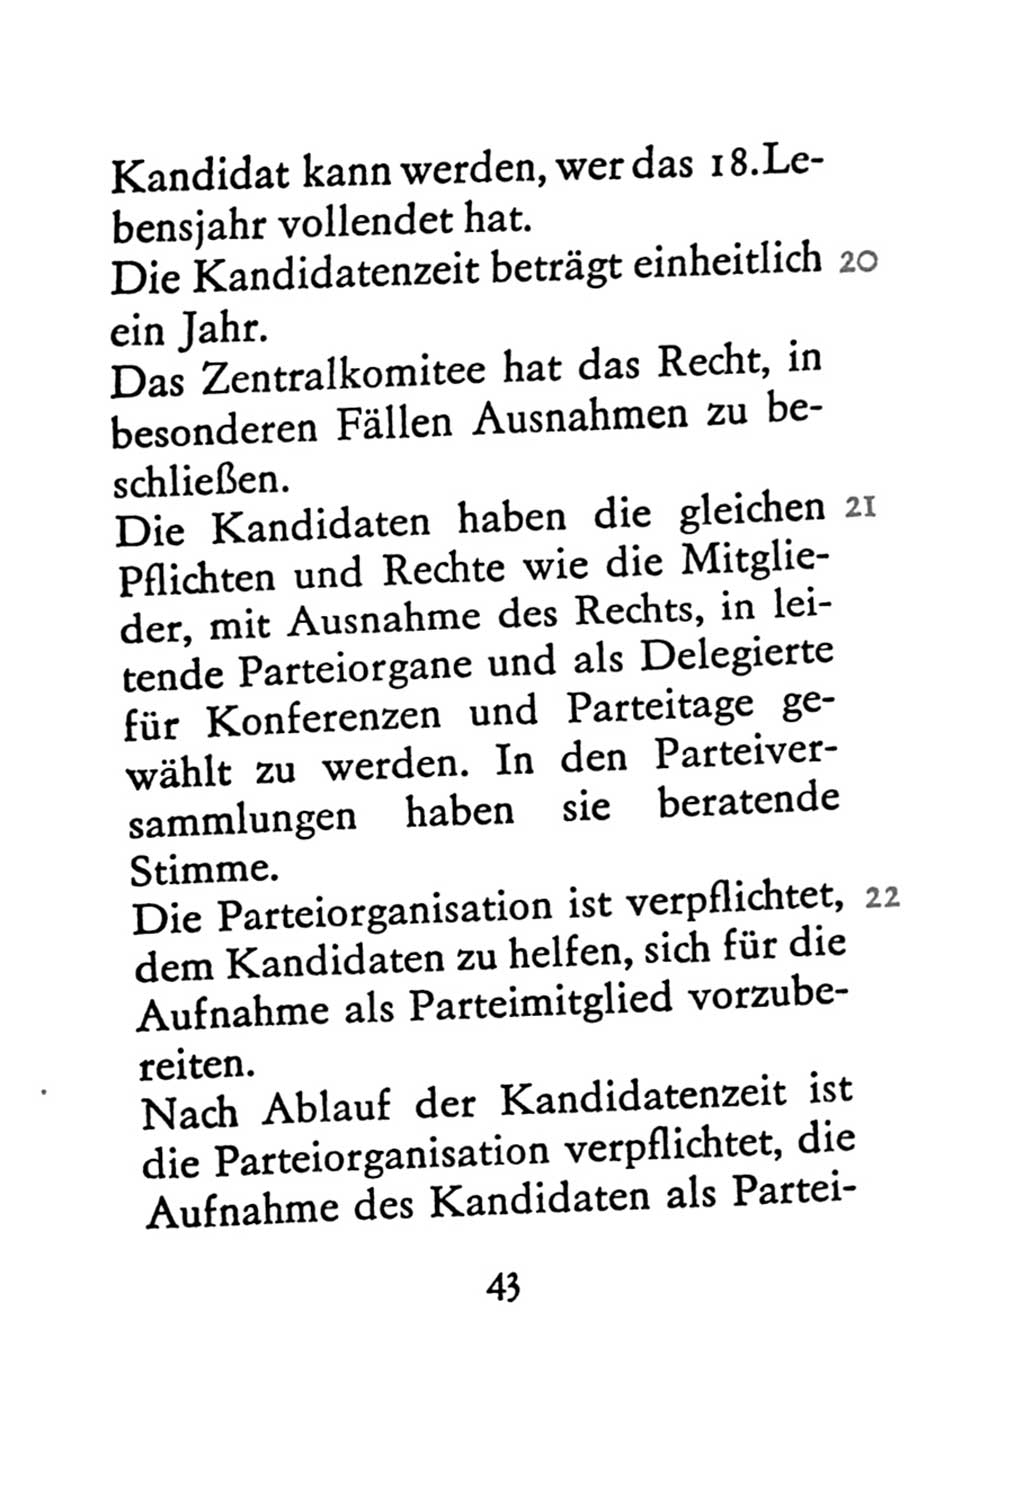 Statut der Sozialistischen Einheitspartei Deutschlands (SED) 1971, Seite 43 (St. SED DDR 1971, S. 43)